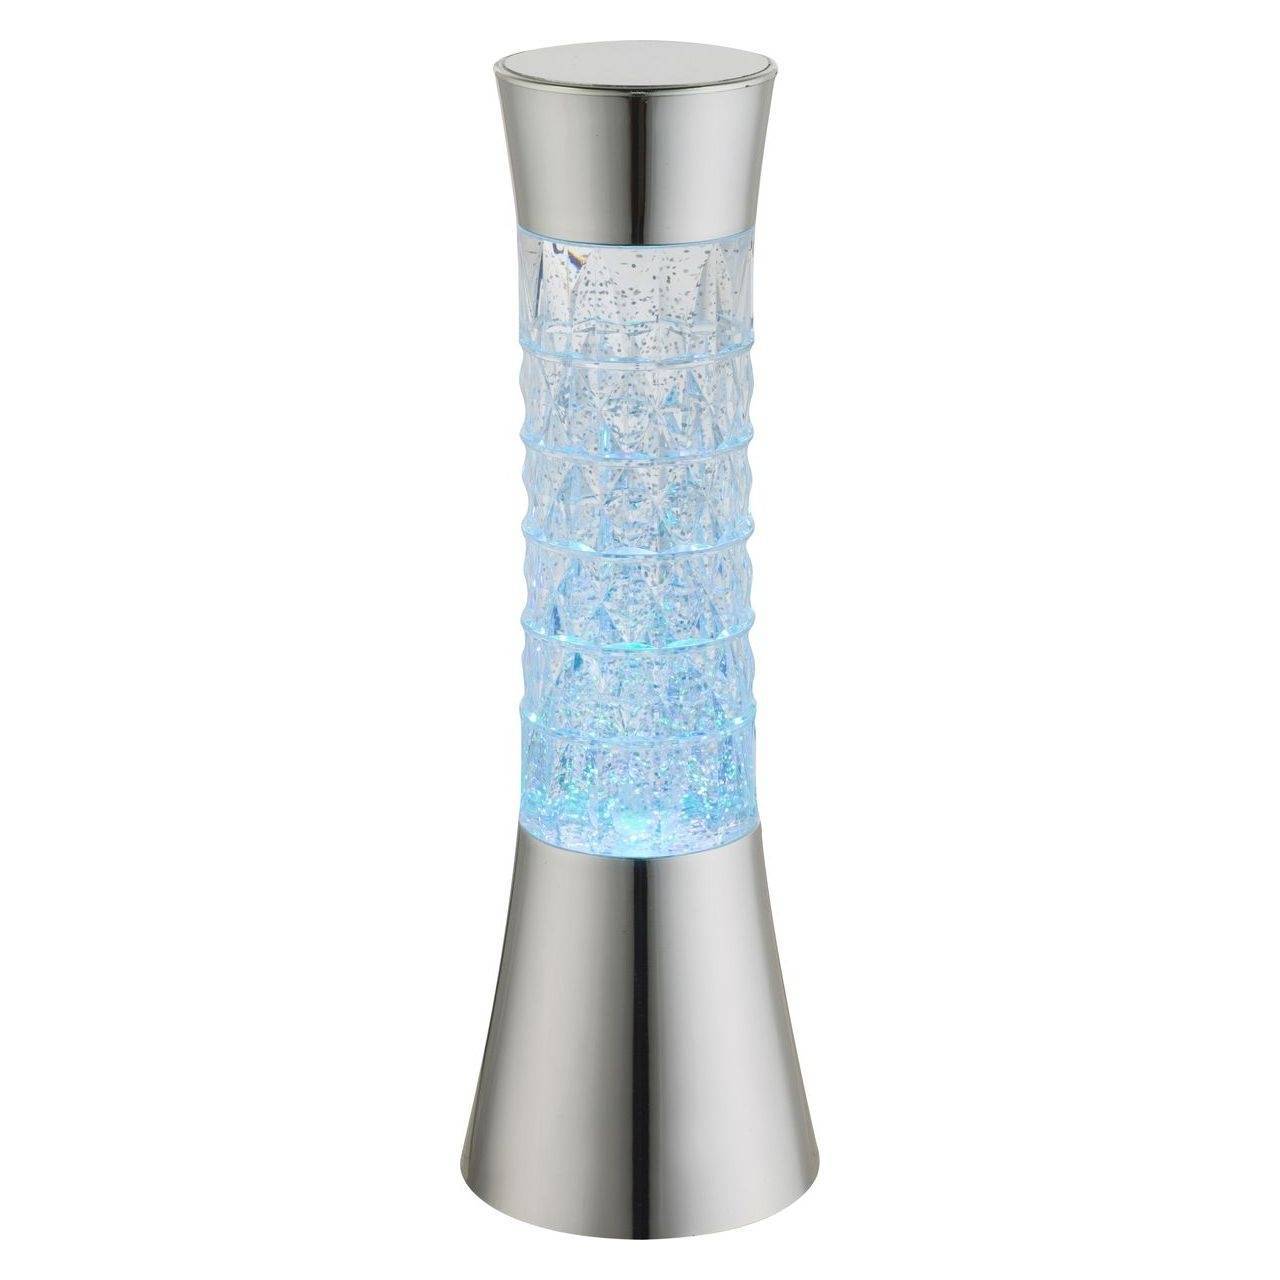 Настольная лампа декоративная Globo 2848, серебро, LED, 6x0,02W